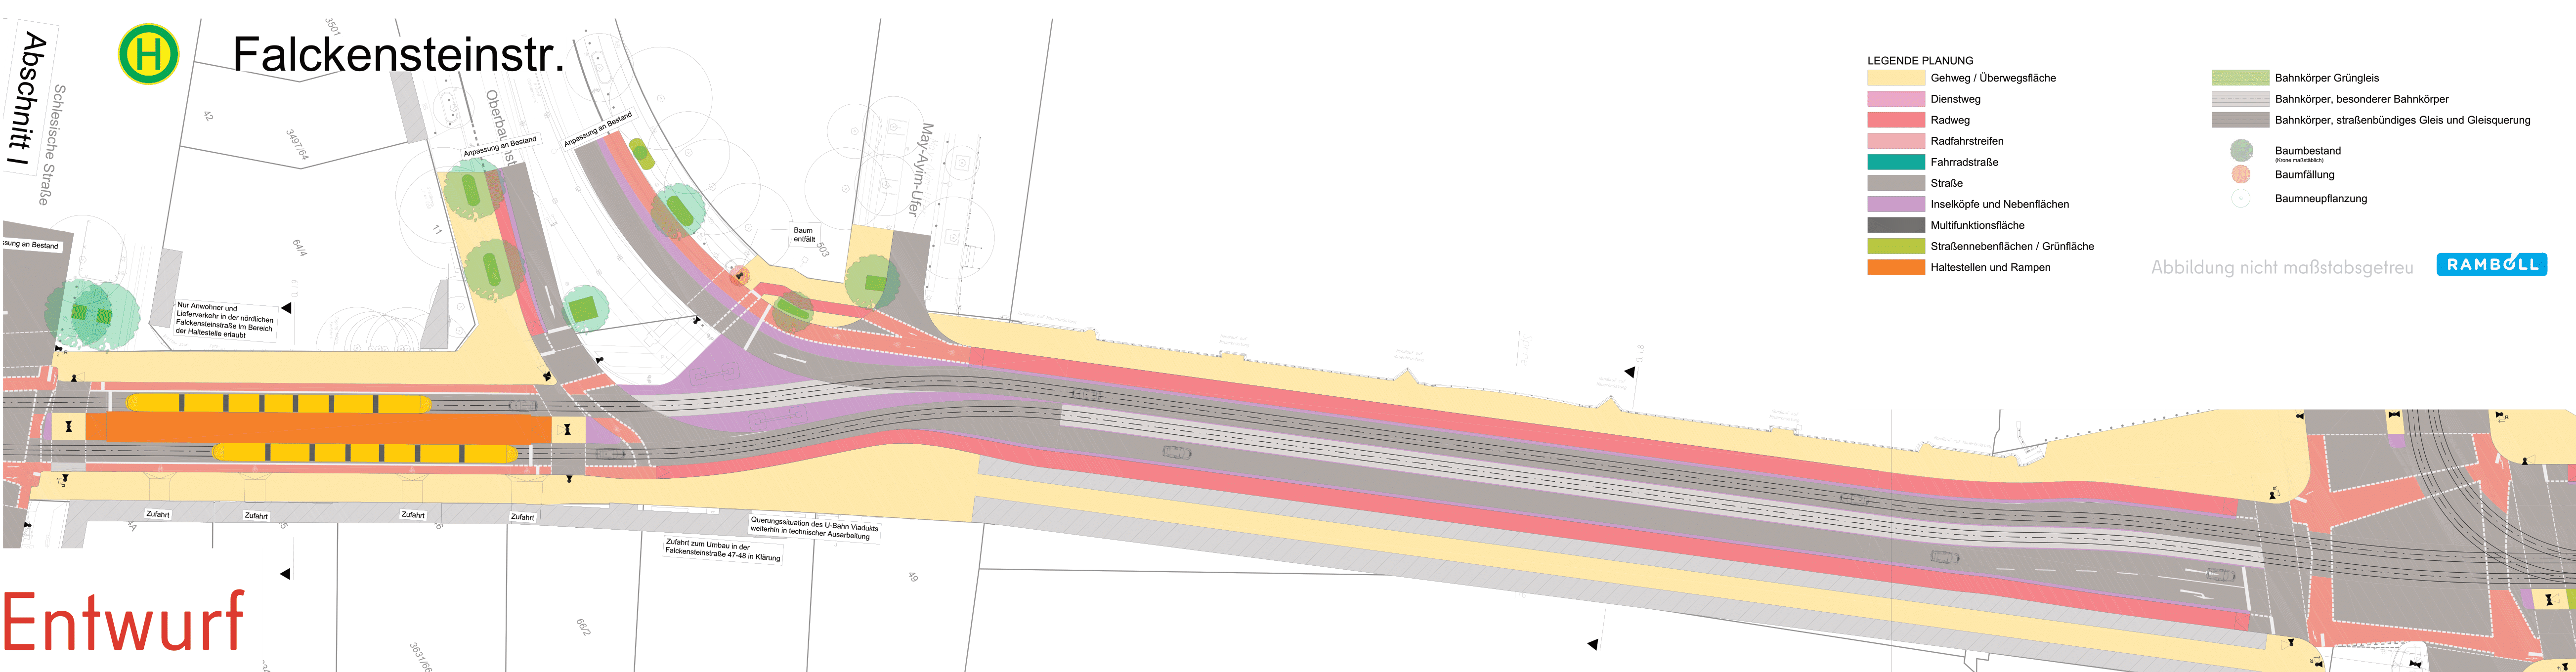 Diese Abbildung zeigt eine technische Zeichnung des Bauabschnitts Oberbaumbrücke